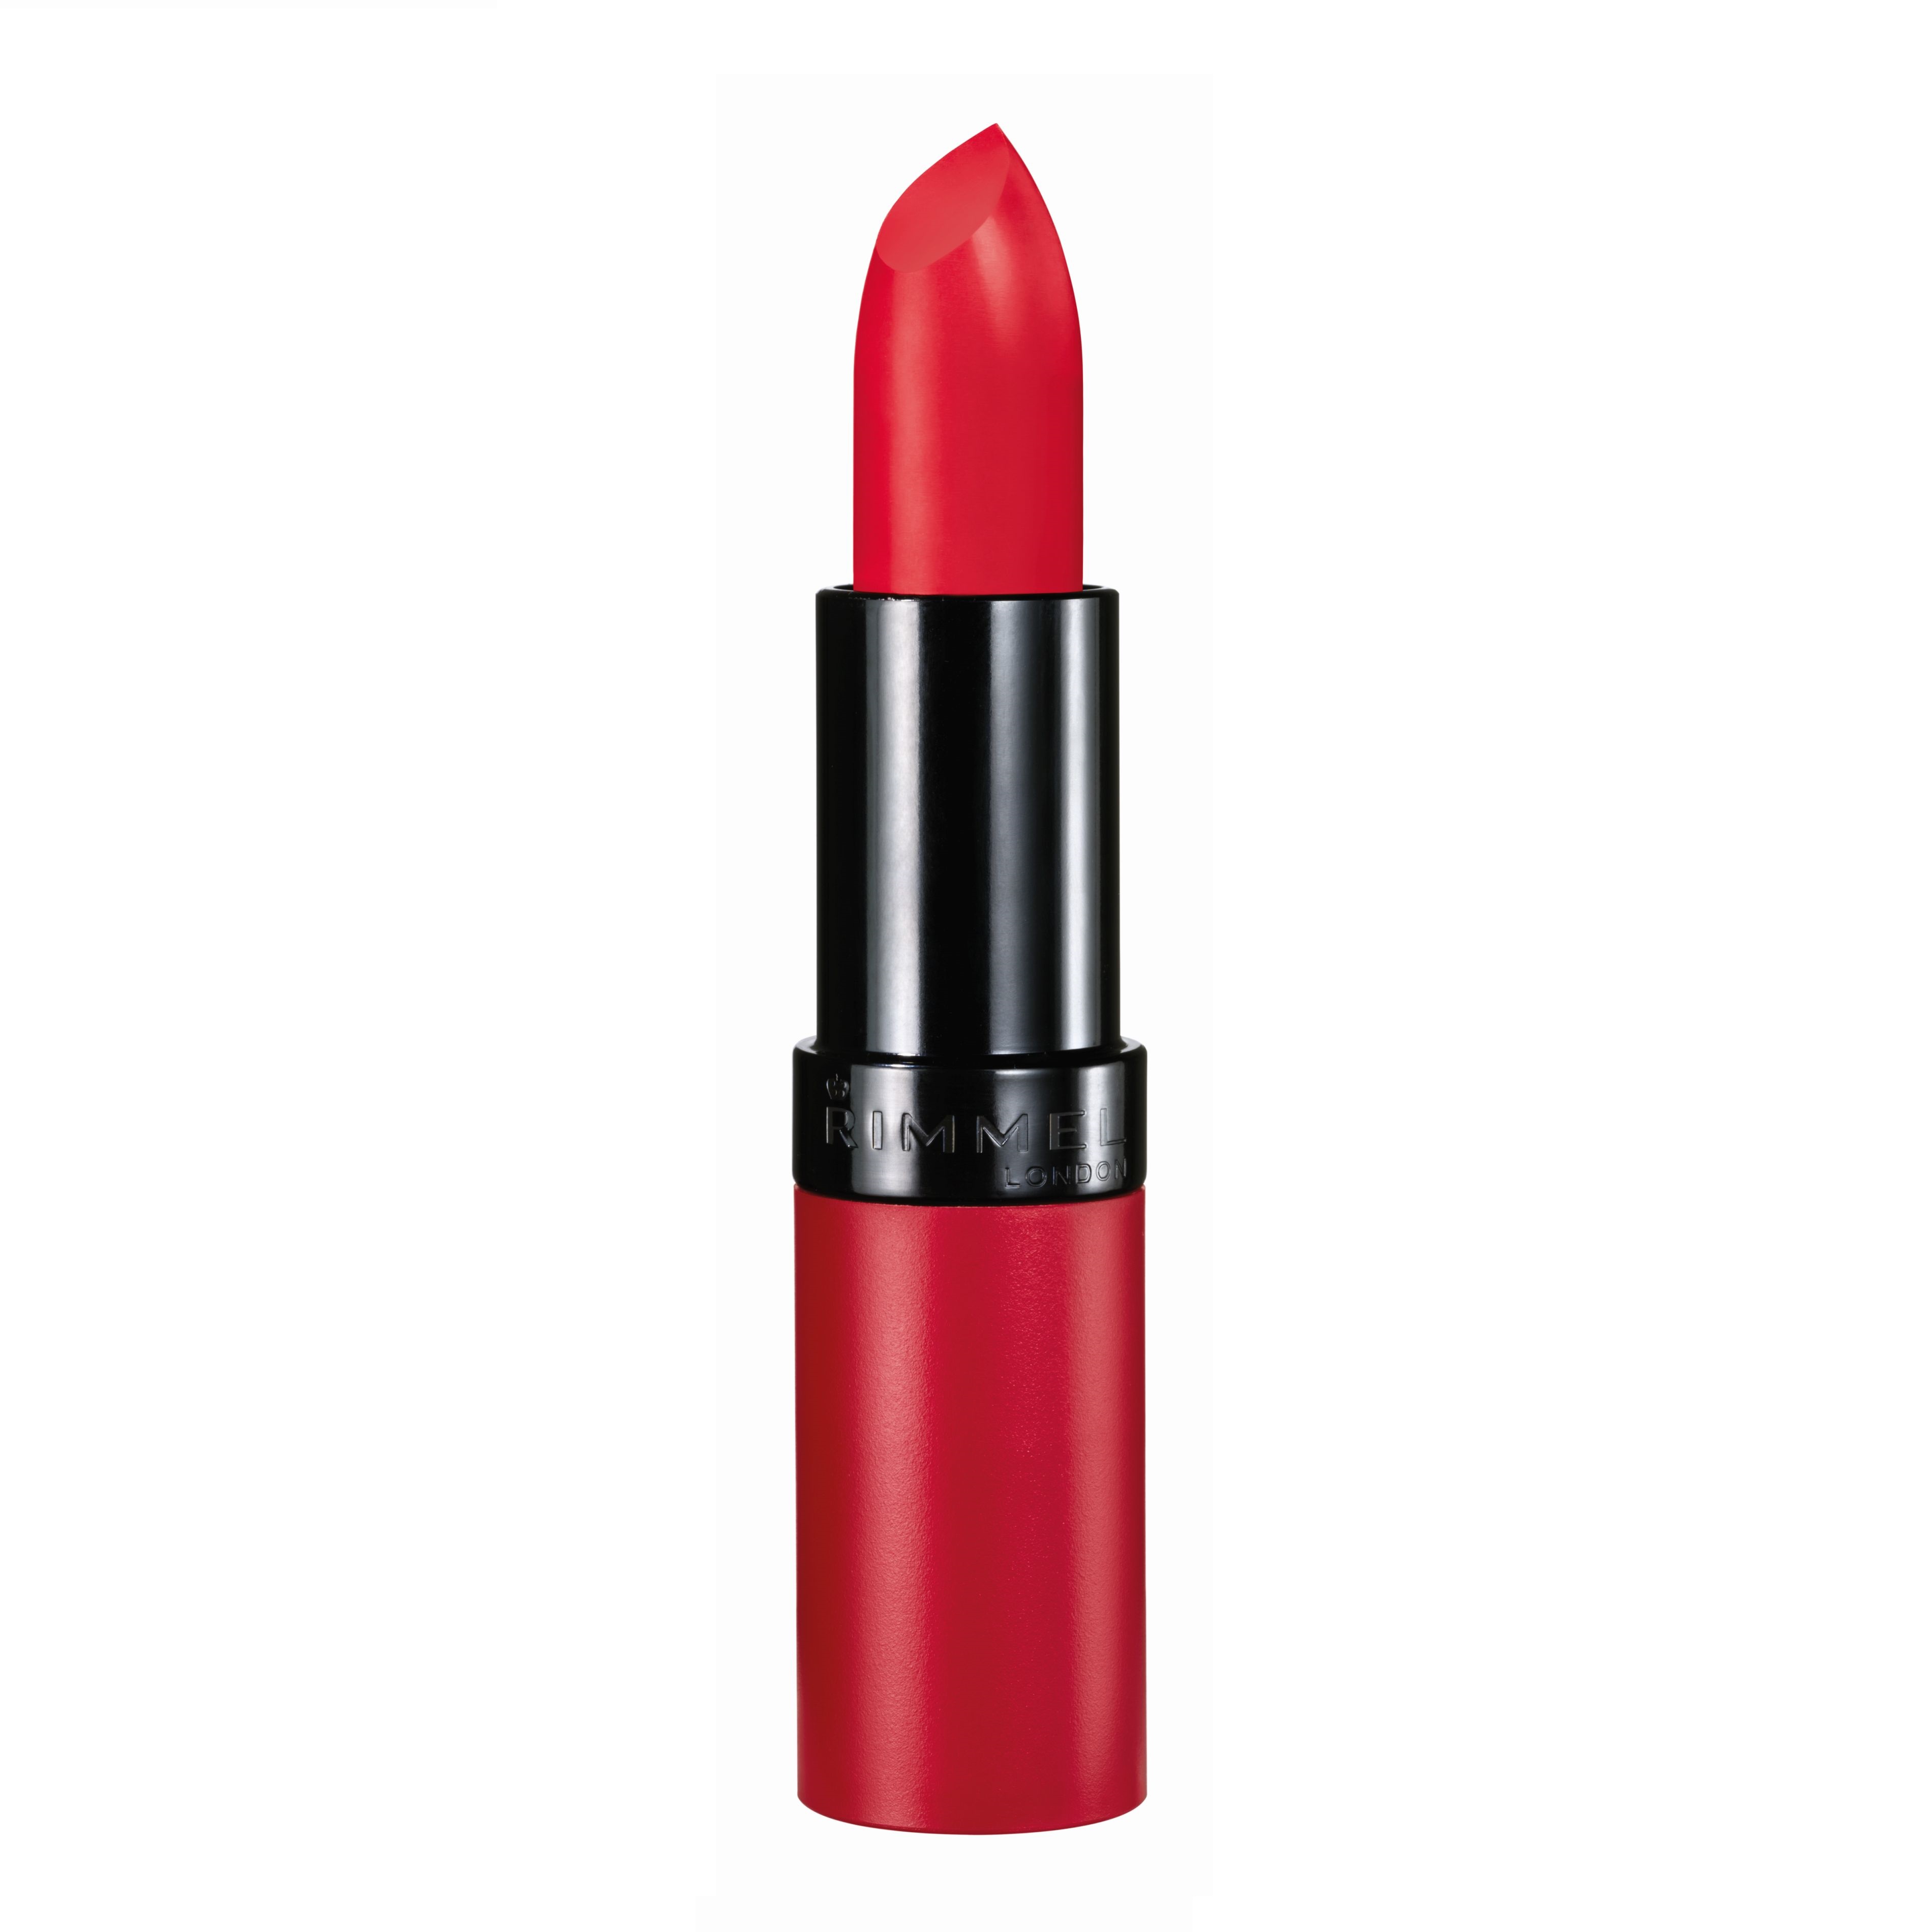 Rimmel Lasting Finish Matte Lipstick by Kate Moss